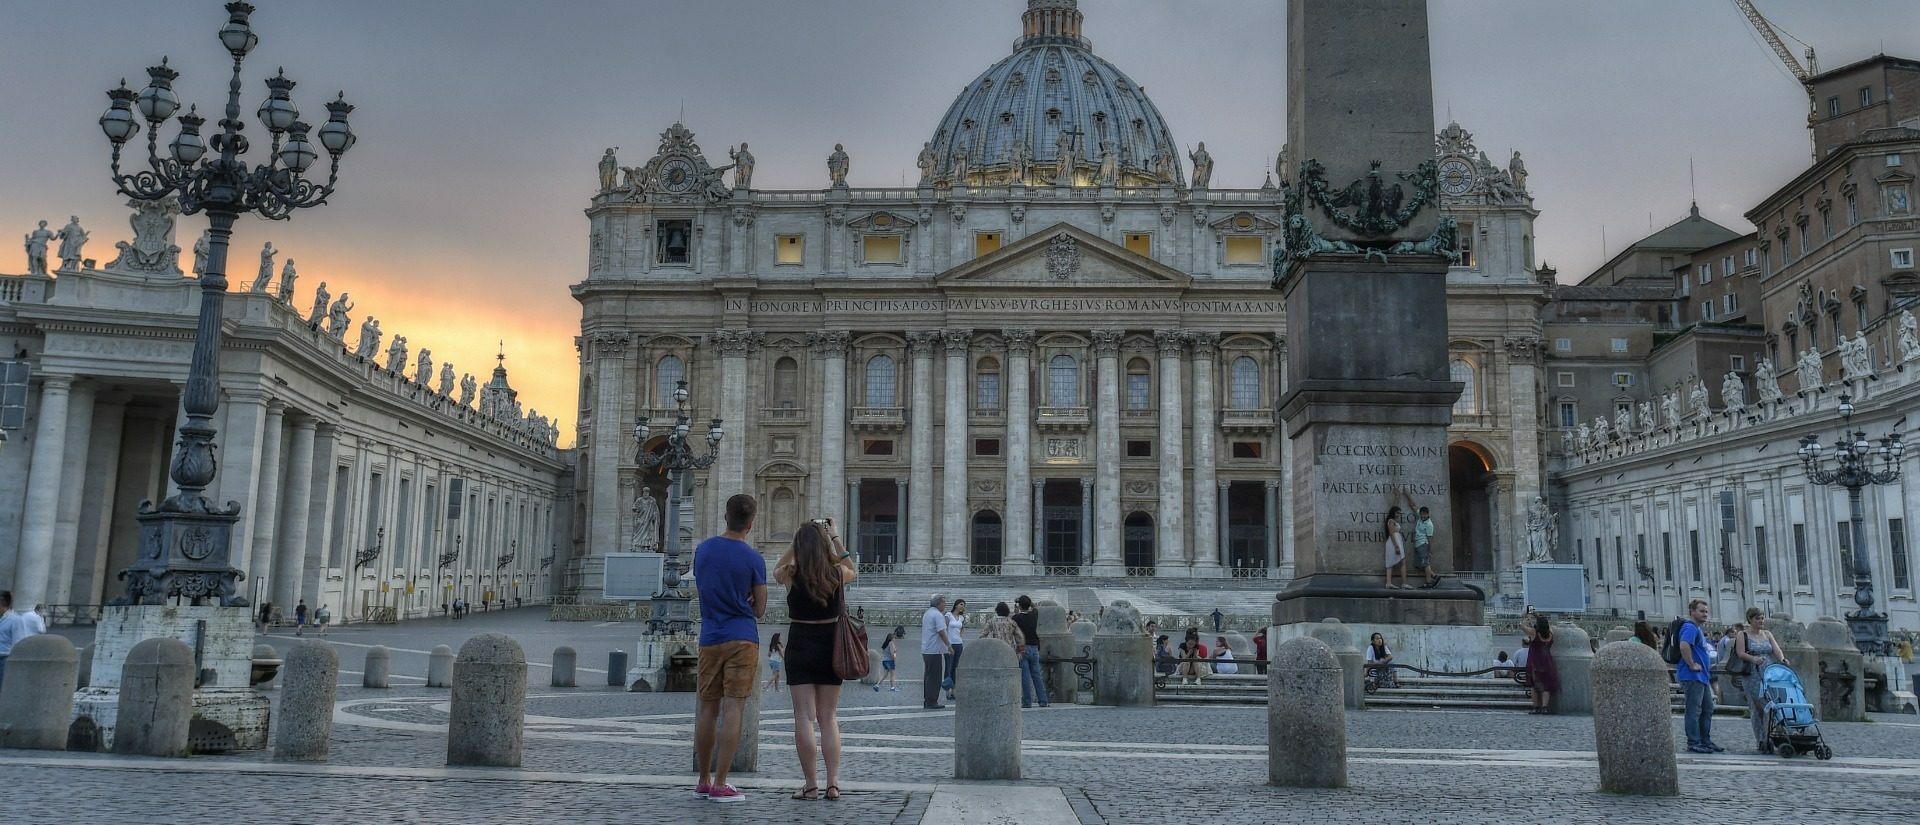 Les personnes souhaitant visiter le Vatican devront se munir d'un passe sanitaire | © Flickr/D. Robinson/CC BY-NC-ND 2.0